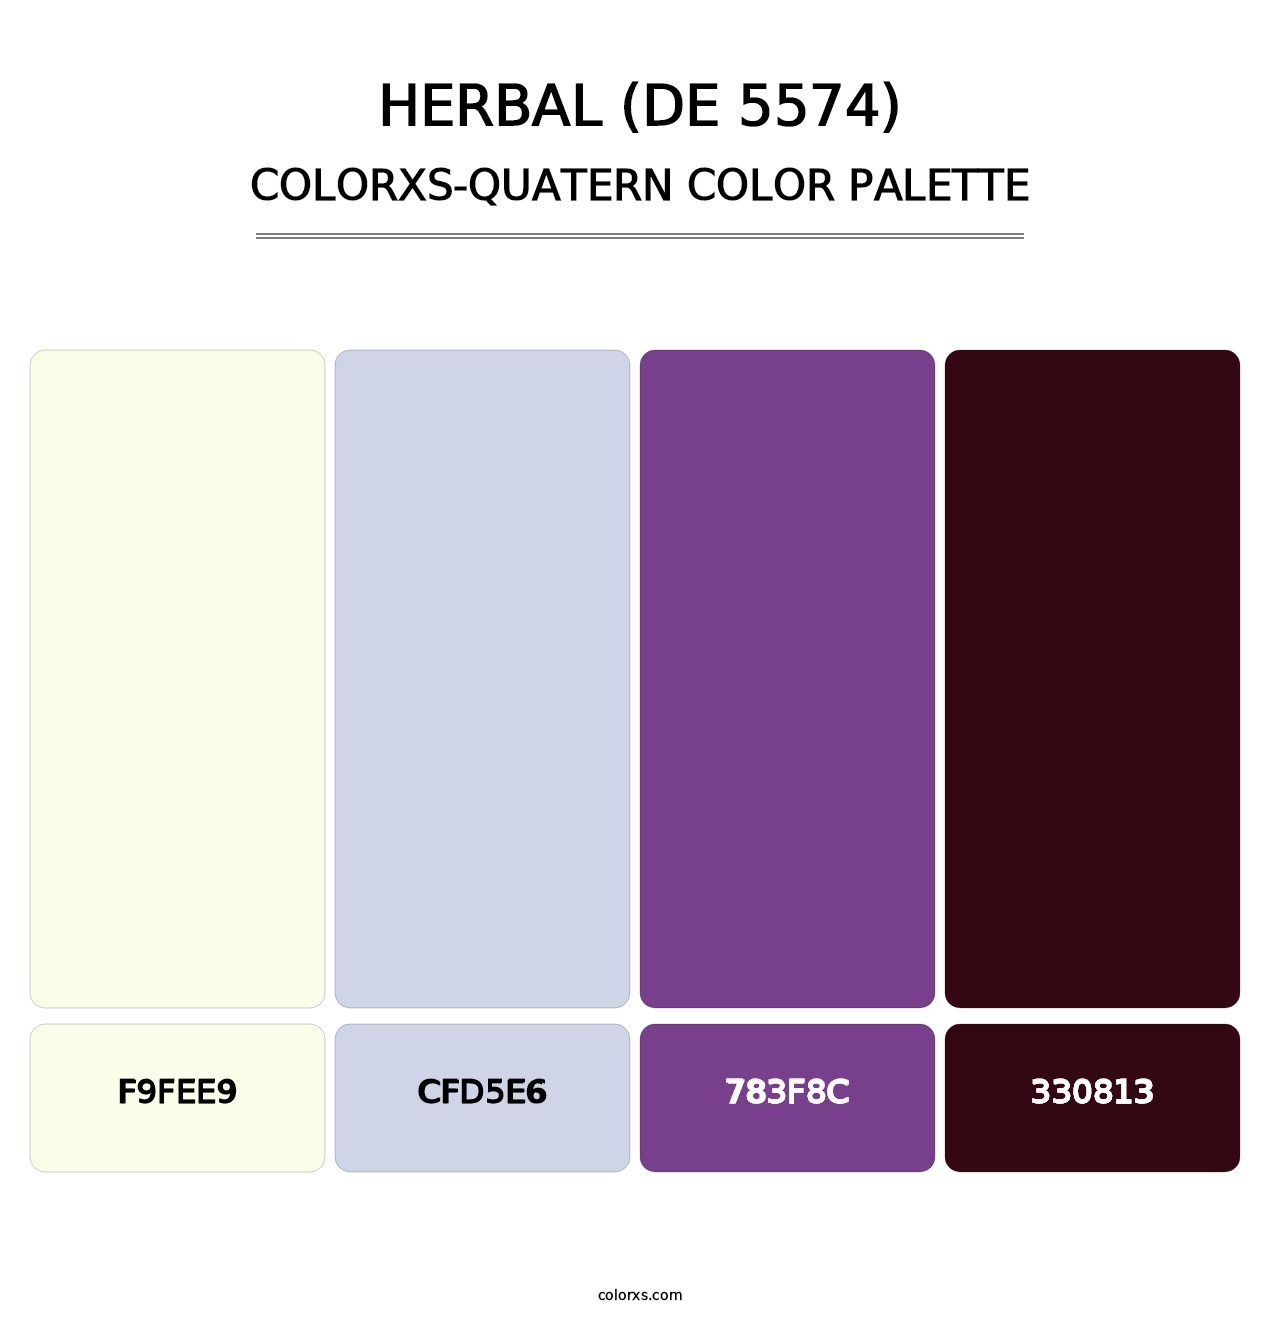 Herbal (DE 5574) - Colorxs Quatern Palette